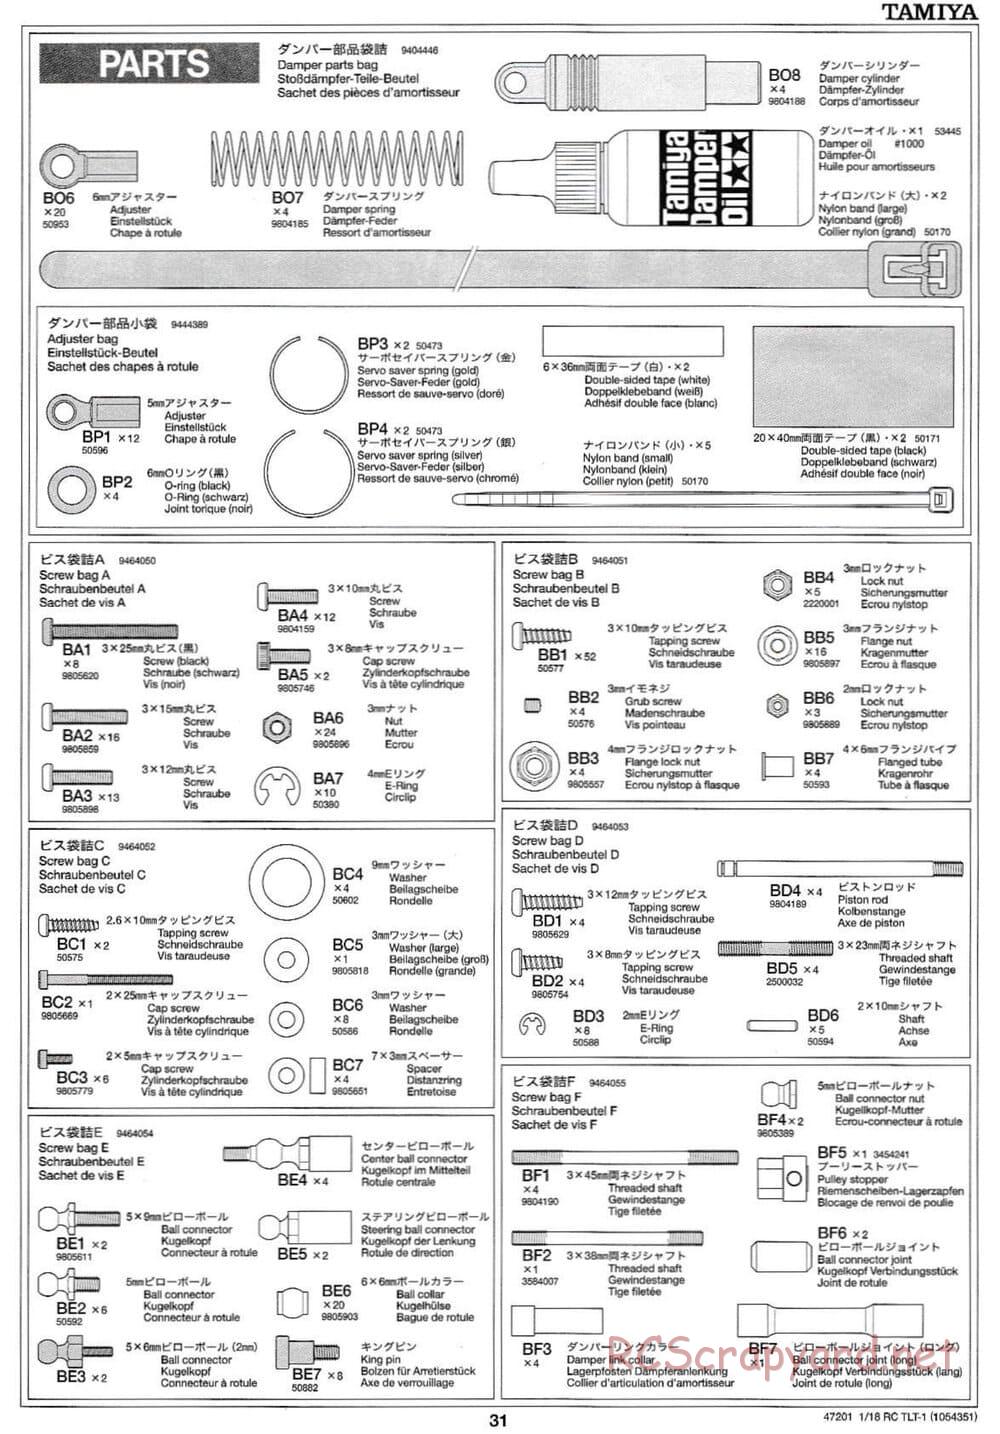 Tamiya - Rock Buster - TLT-1 Chassis - Manual - Page 31